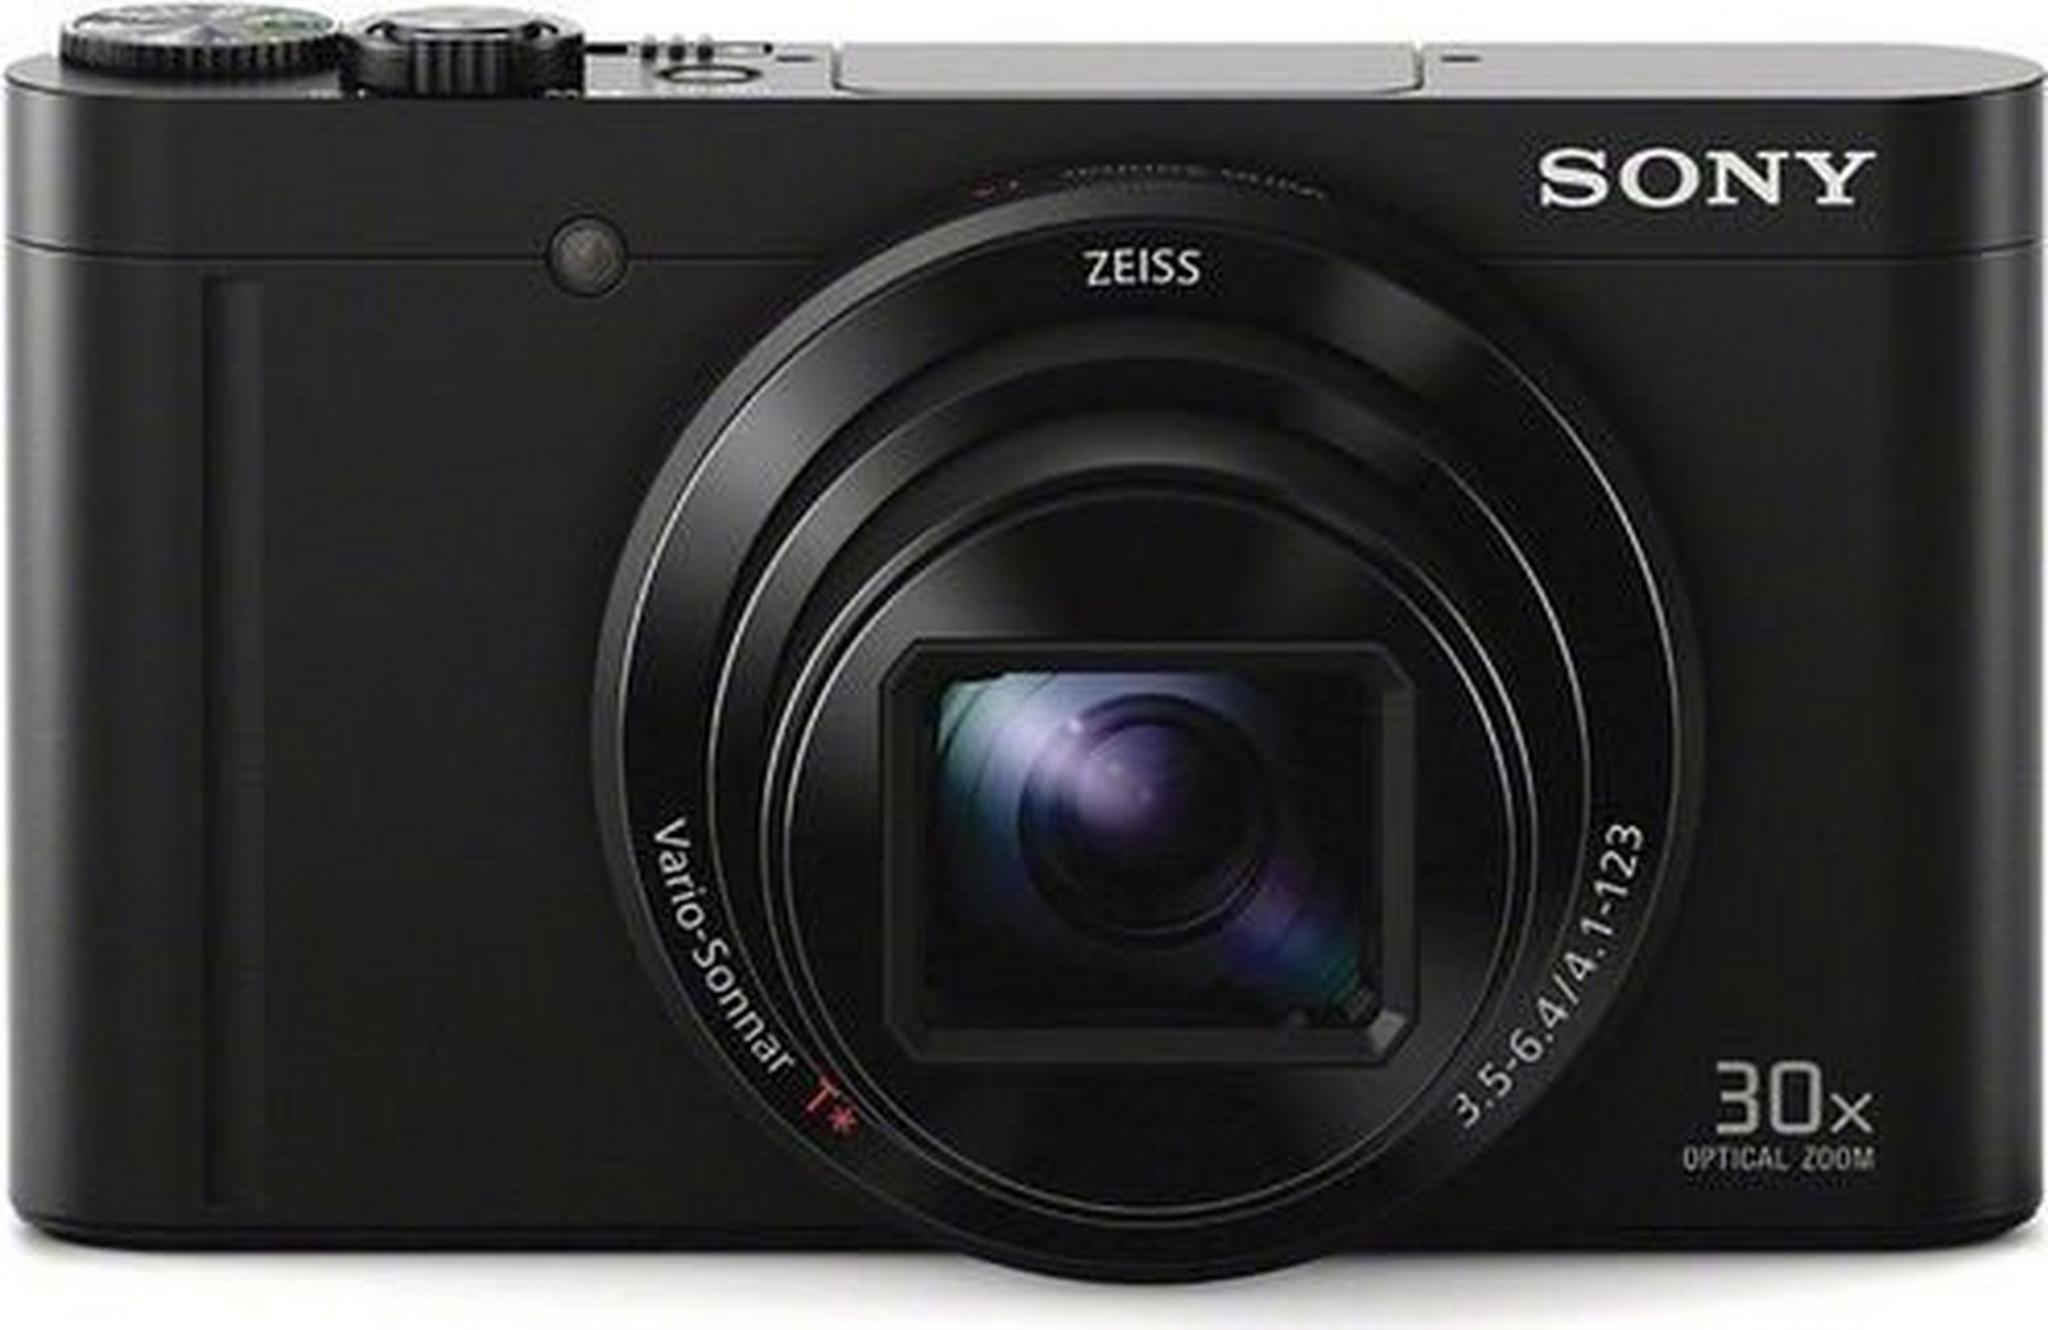 Sony Cyber-shot DSC-WX500 Digital Camera - Black